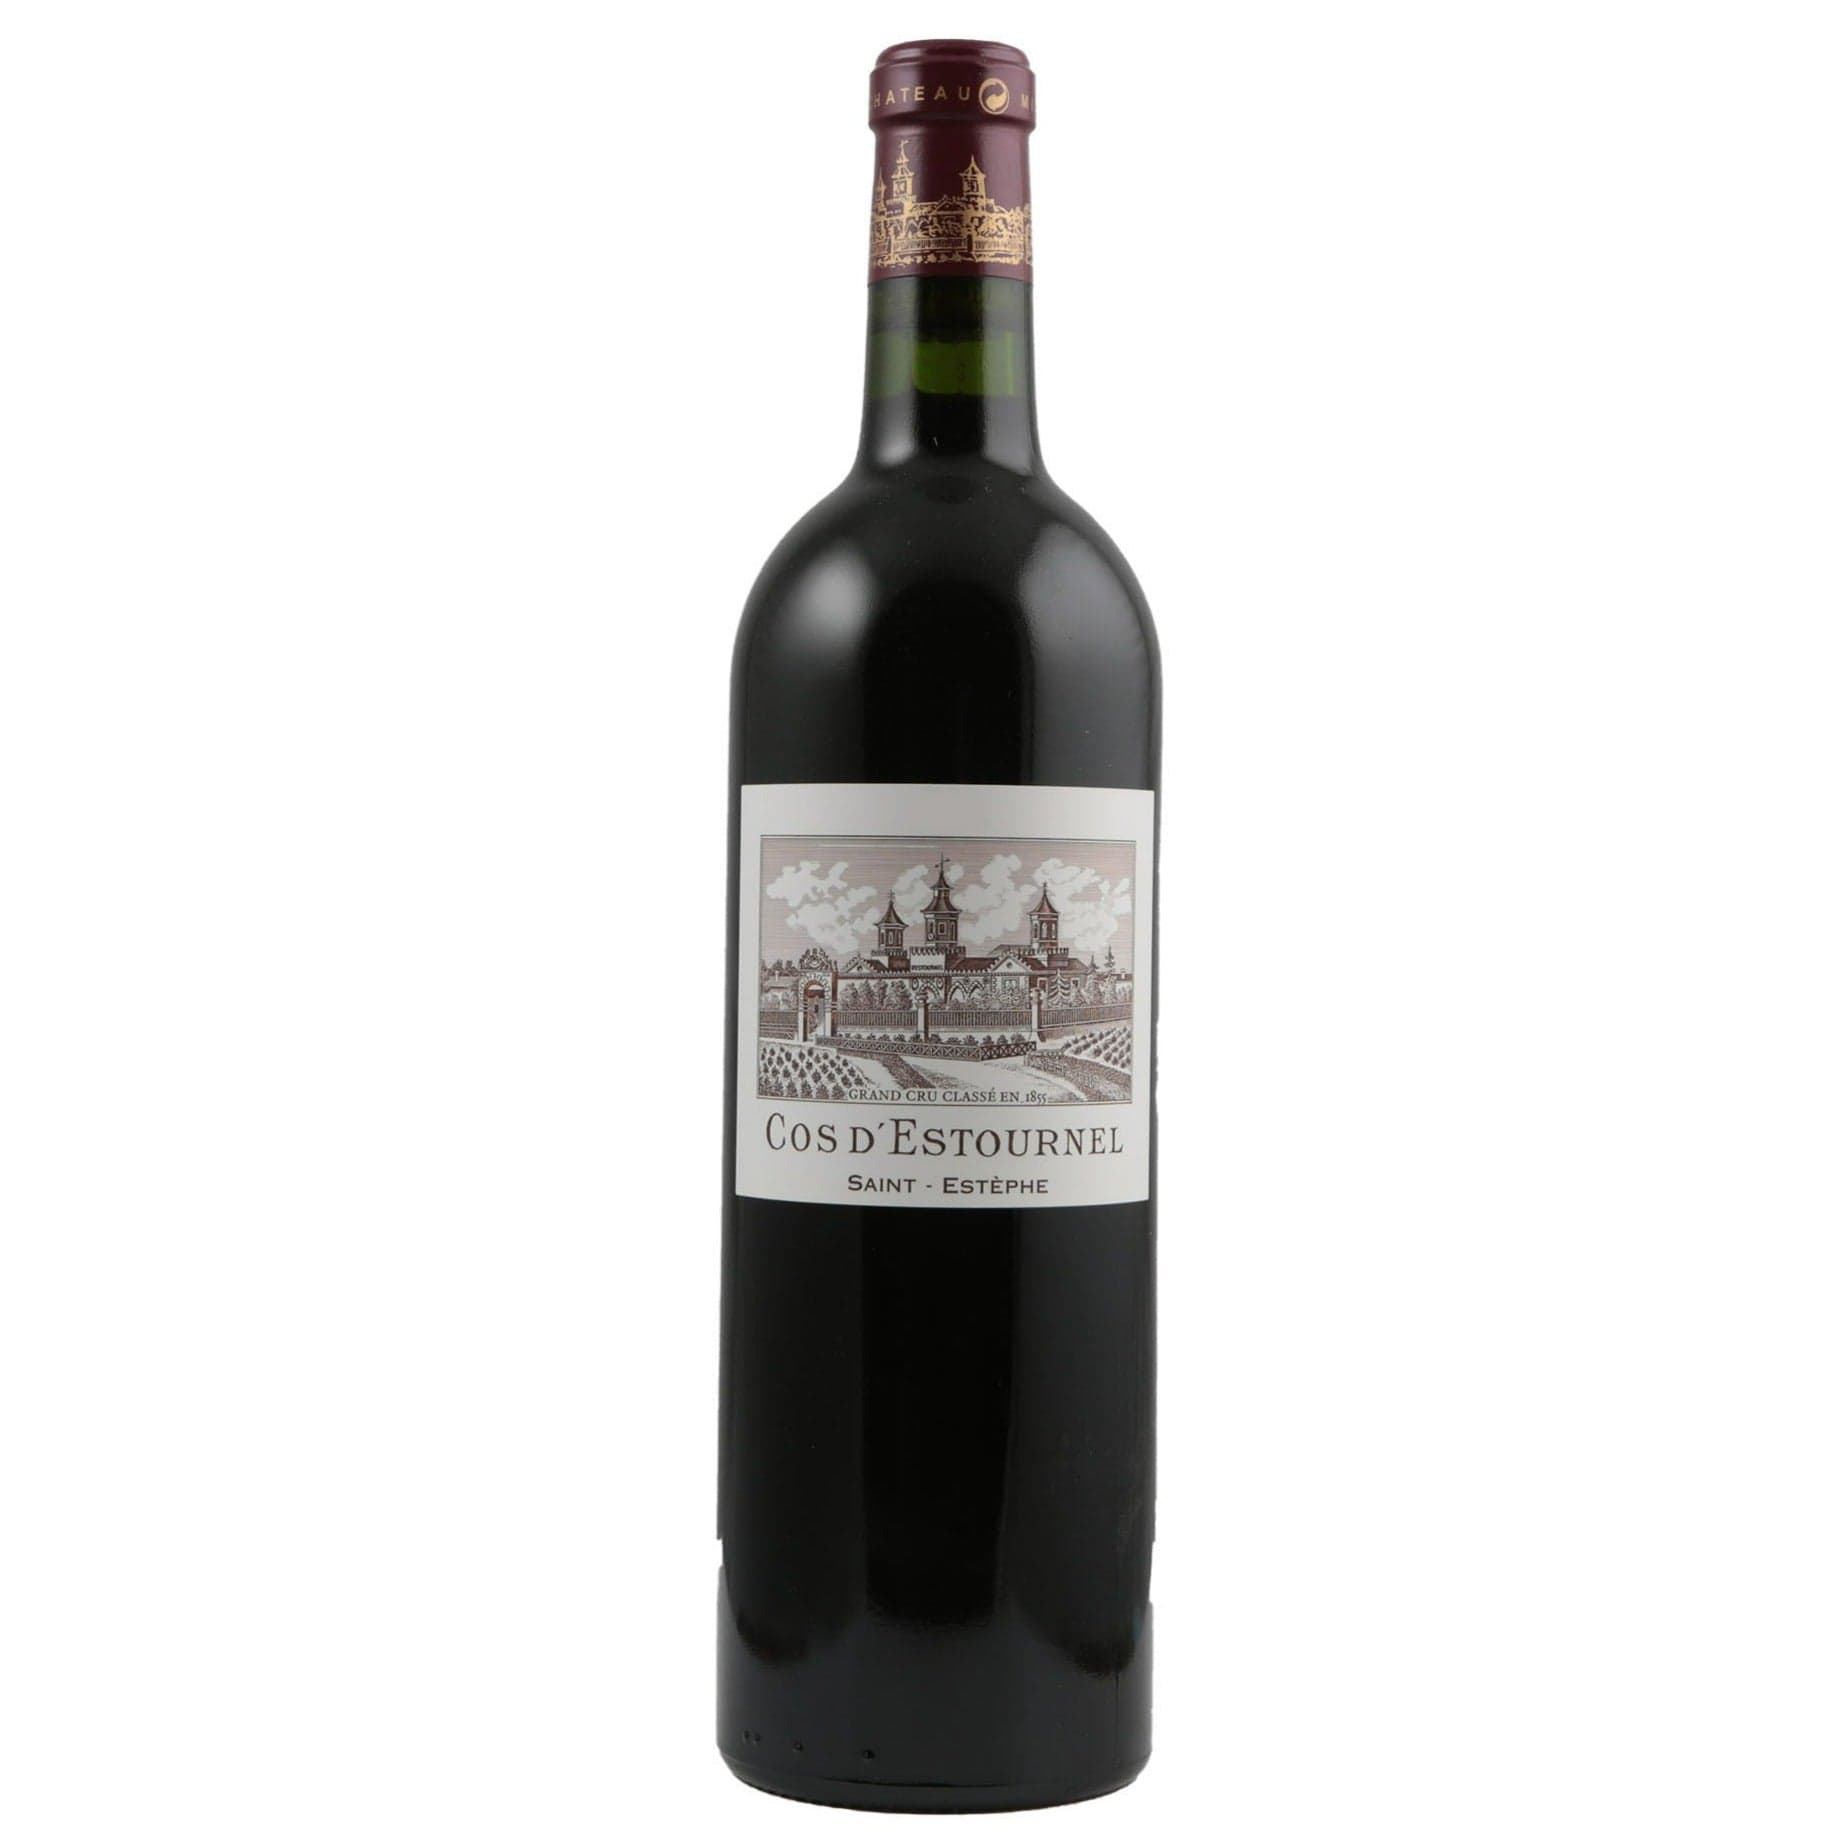 Single bottle of Red wine Ch. Cos d'Estournel, 2nd Growth Grand Cru Classe, Saint Estephe, 2010 78% Cabernet Sauvignon, 19% Merlot, 2% Cabernet Franc & 1% Petit Verdot